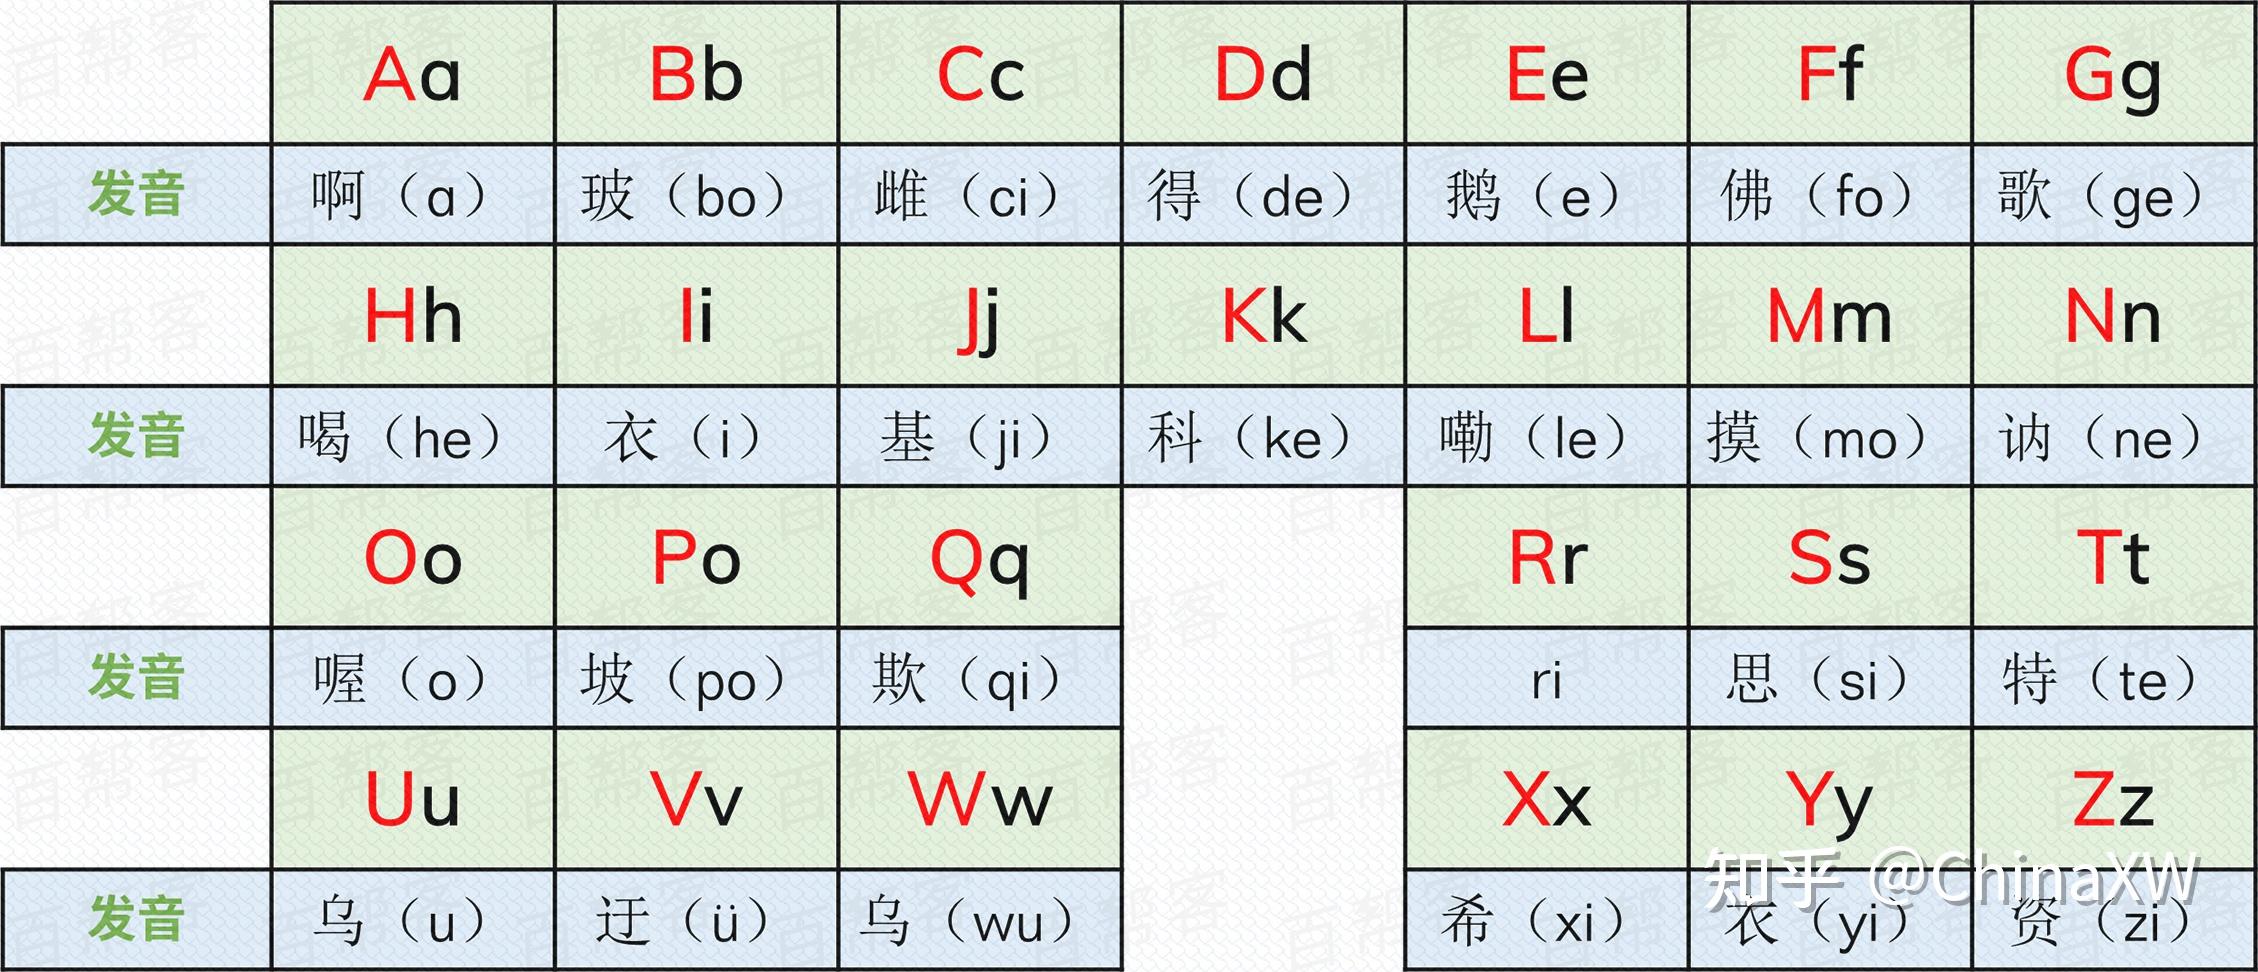 汉语拼音方案中的26个字母,为了运用方便,符合国际习惯,拼音字母排列